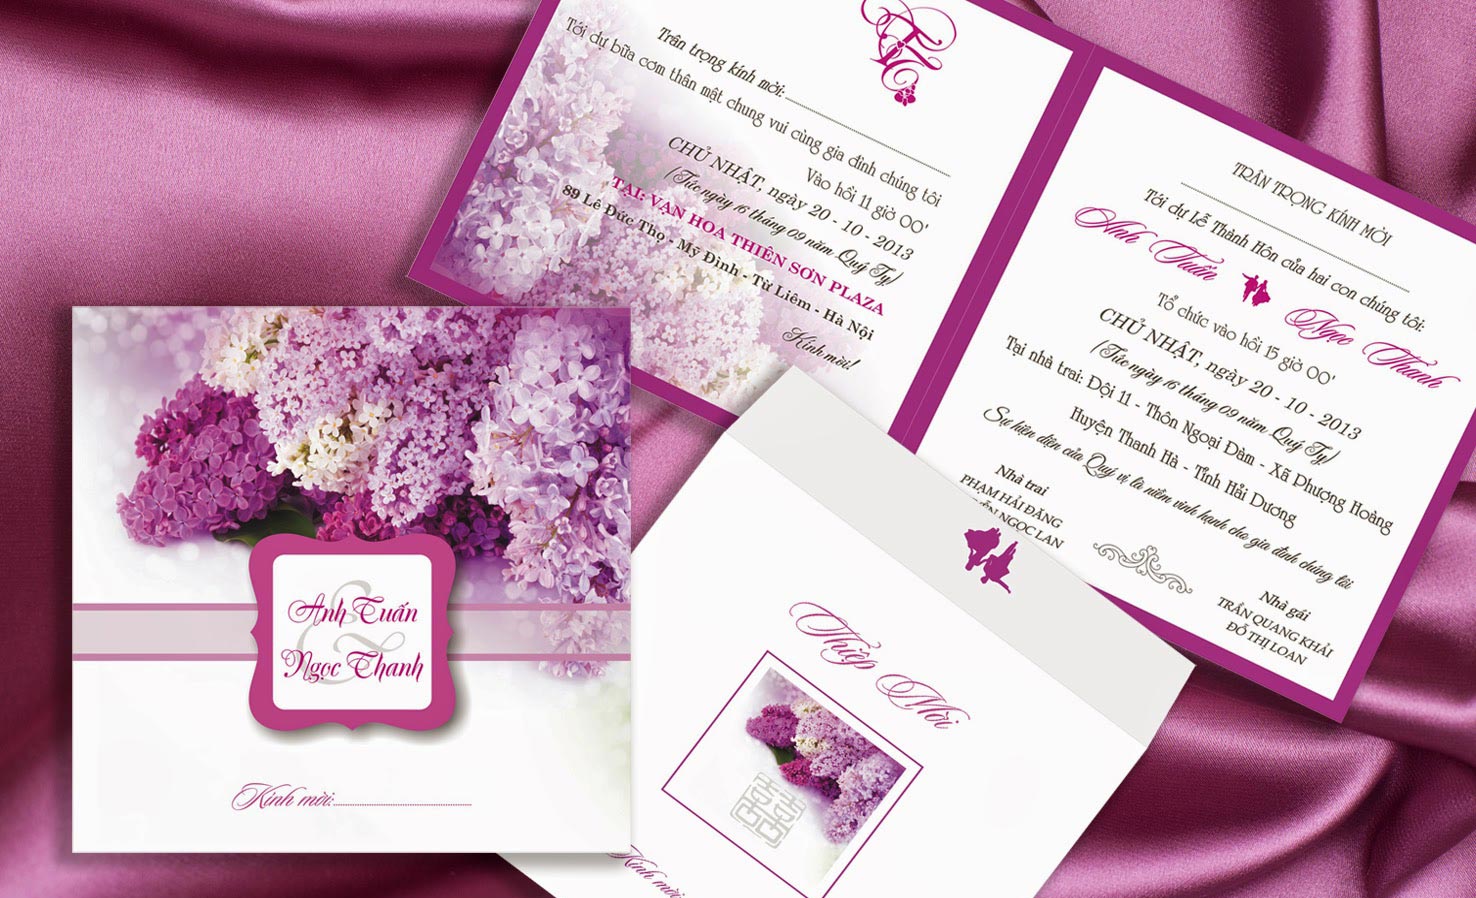 Thiệp cưới đẹp màu tím in hoa trang nhã